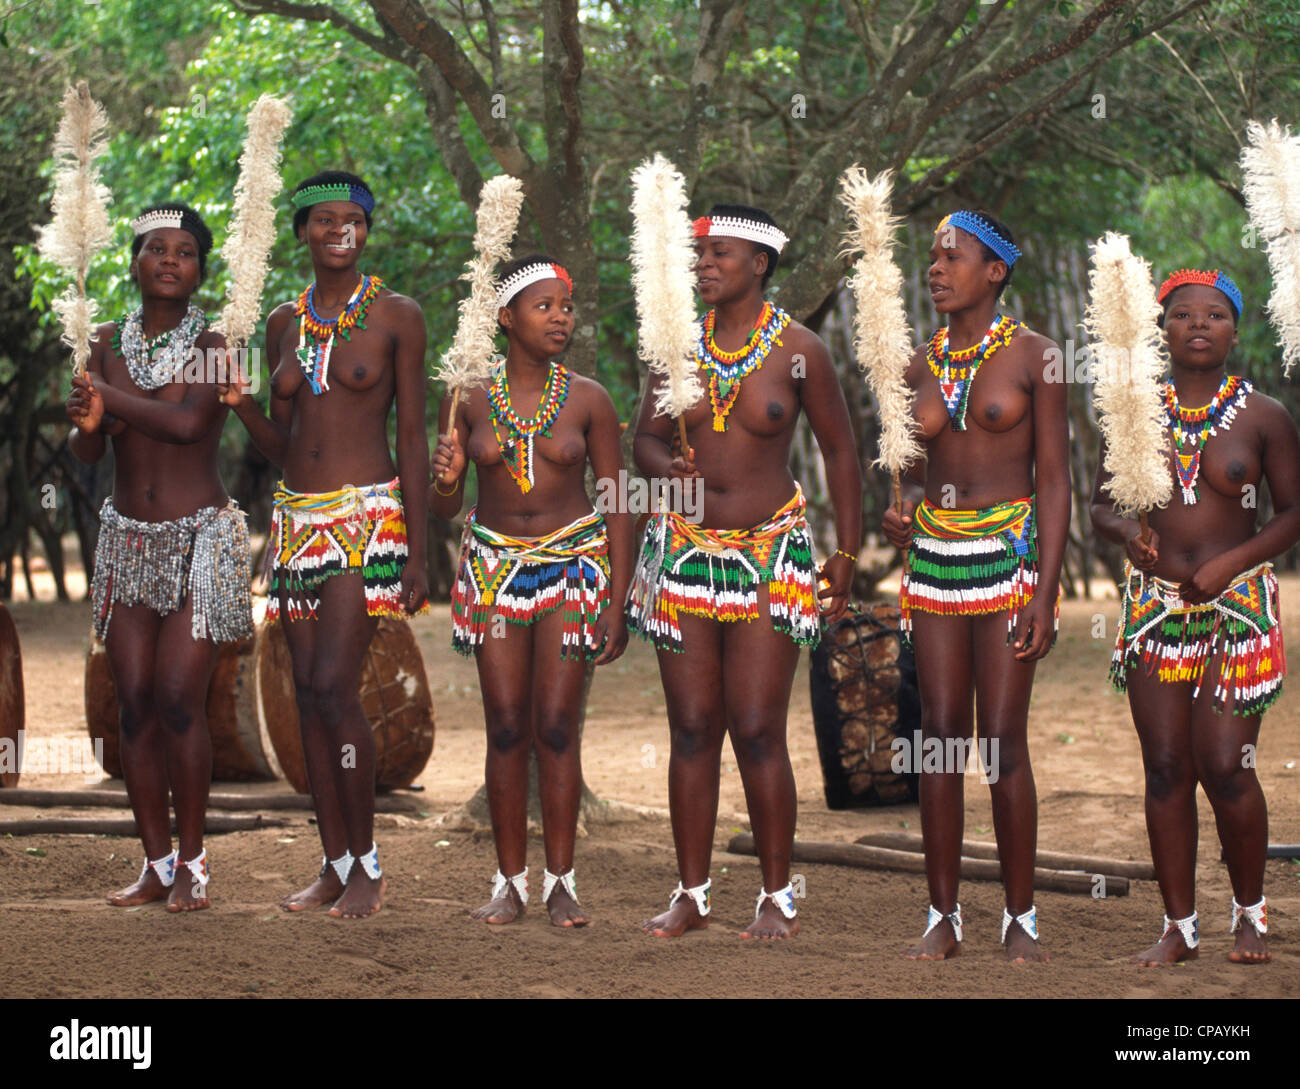 South Africa Kwazulu Natal Damazulu Village Zulu Women Stock Photo